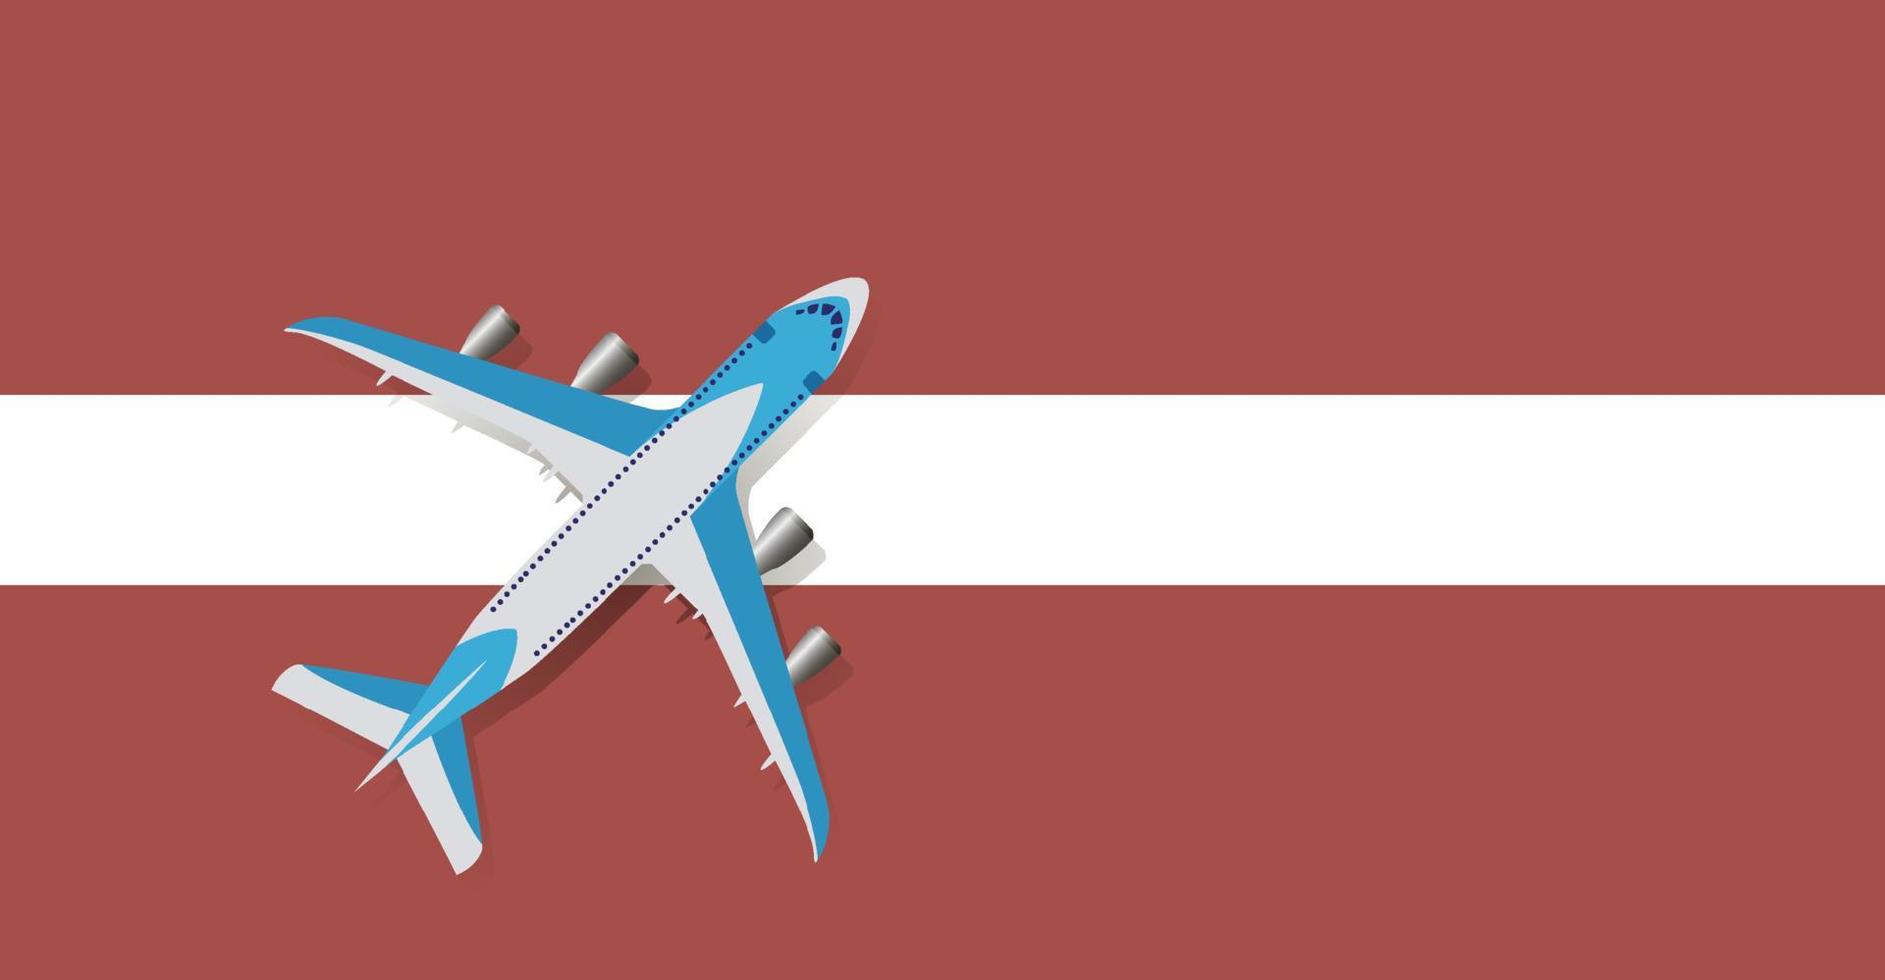 ilustração em vetor de um avião de passageiros sobrevoando a bandeira da letônia. conceito de turismo e viagens